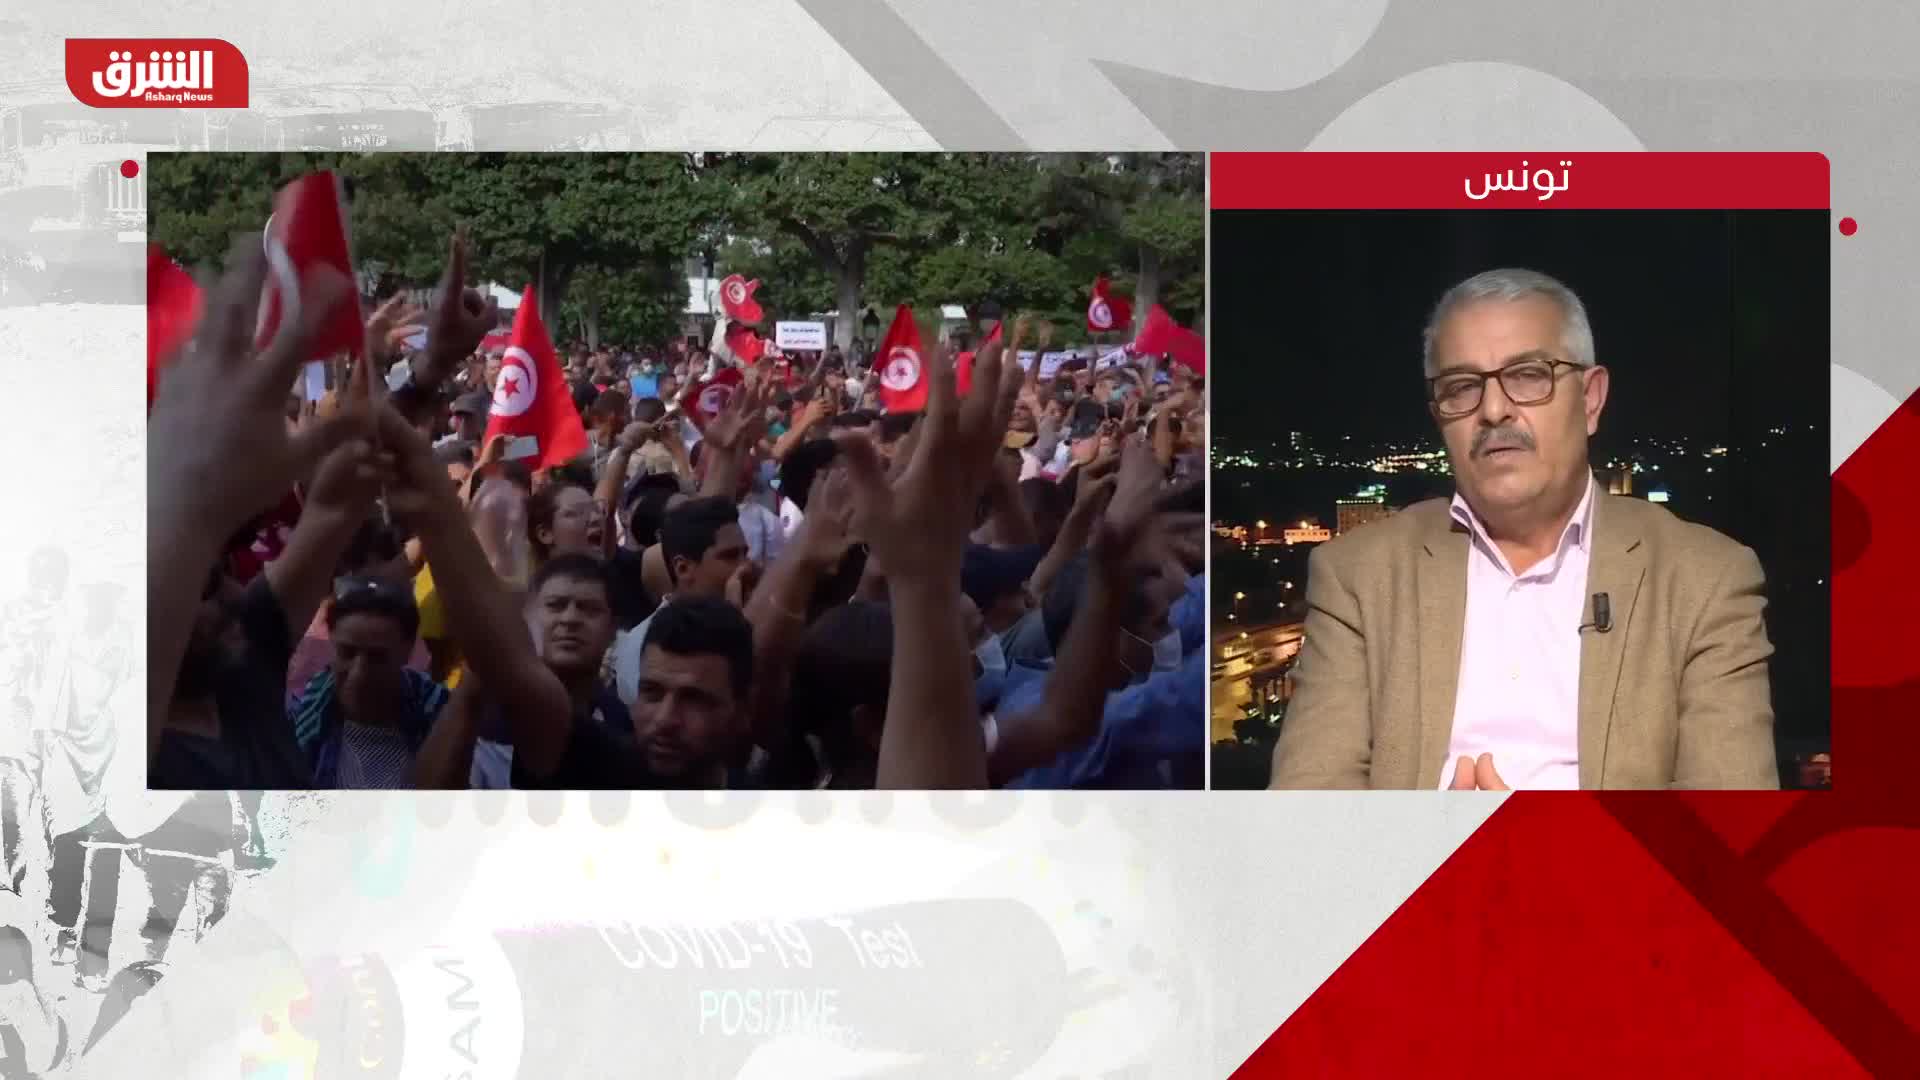 اتحاد الشغل التونسي: الاستشارة الشعبية لن تكون بديلاً عن الحوار مع ممثلي الشعب